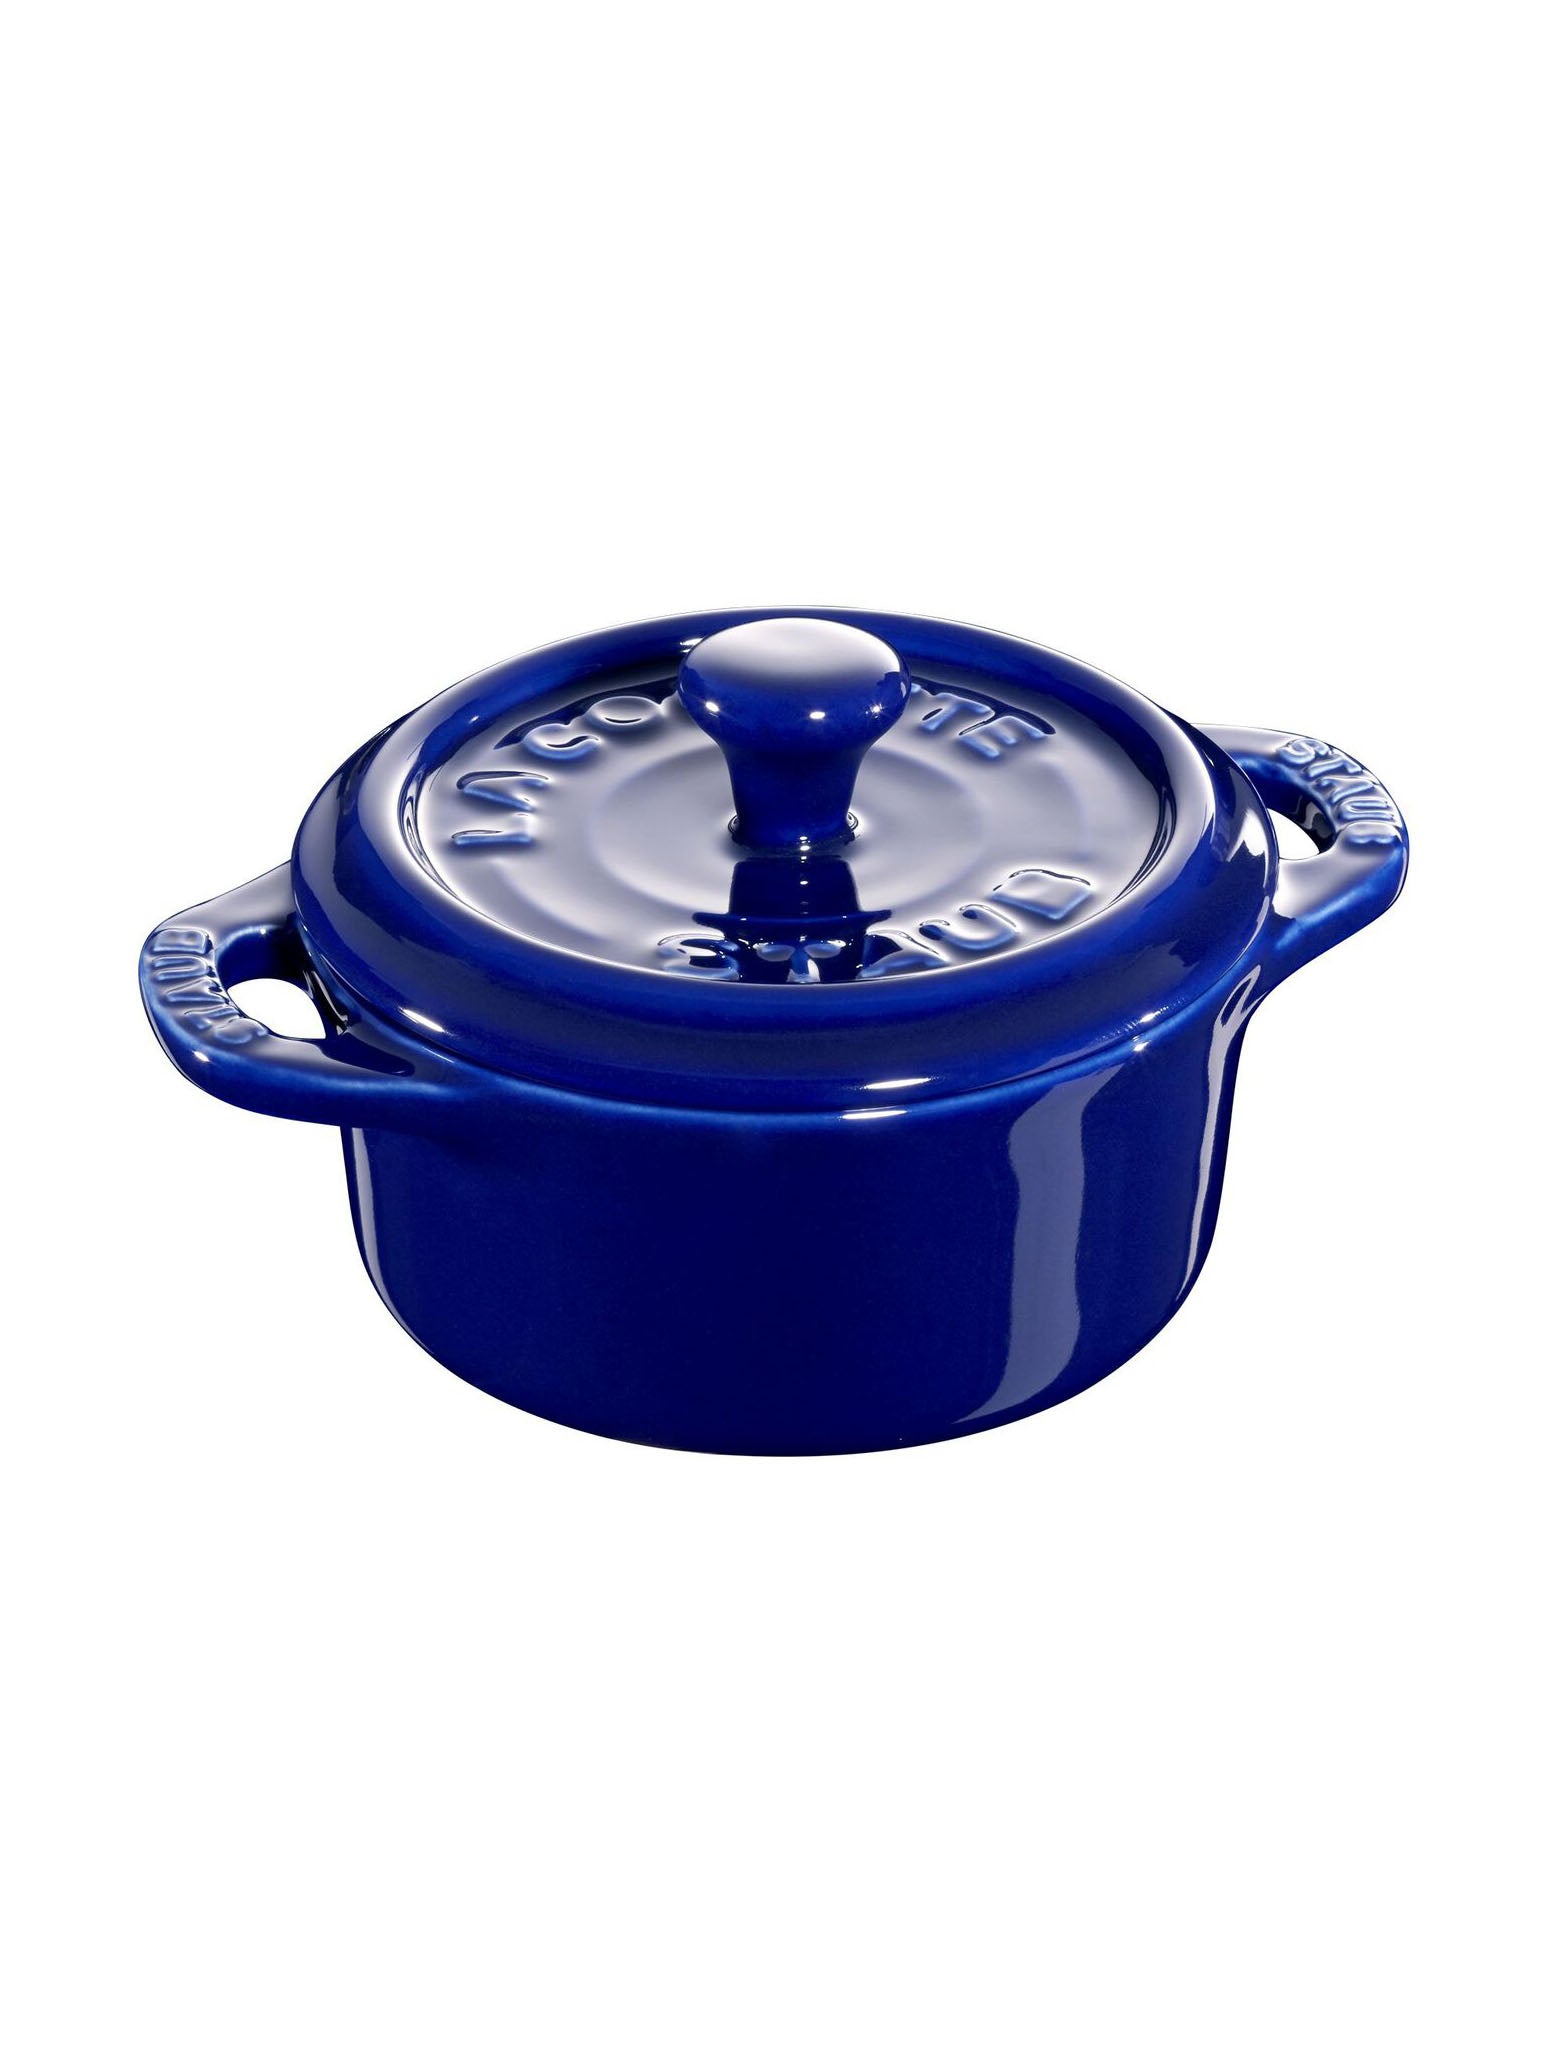 http://westontable.com/cdn/shop/products/Staub-Ceramics-3-Piece-Cocotte-Set-Dark-Blue-SP.jpg?v=1619542779